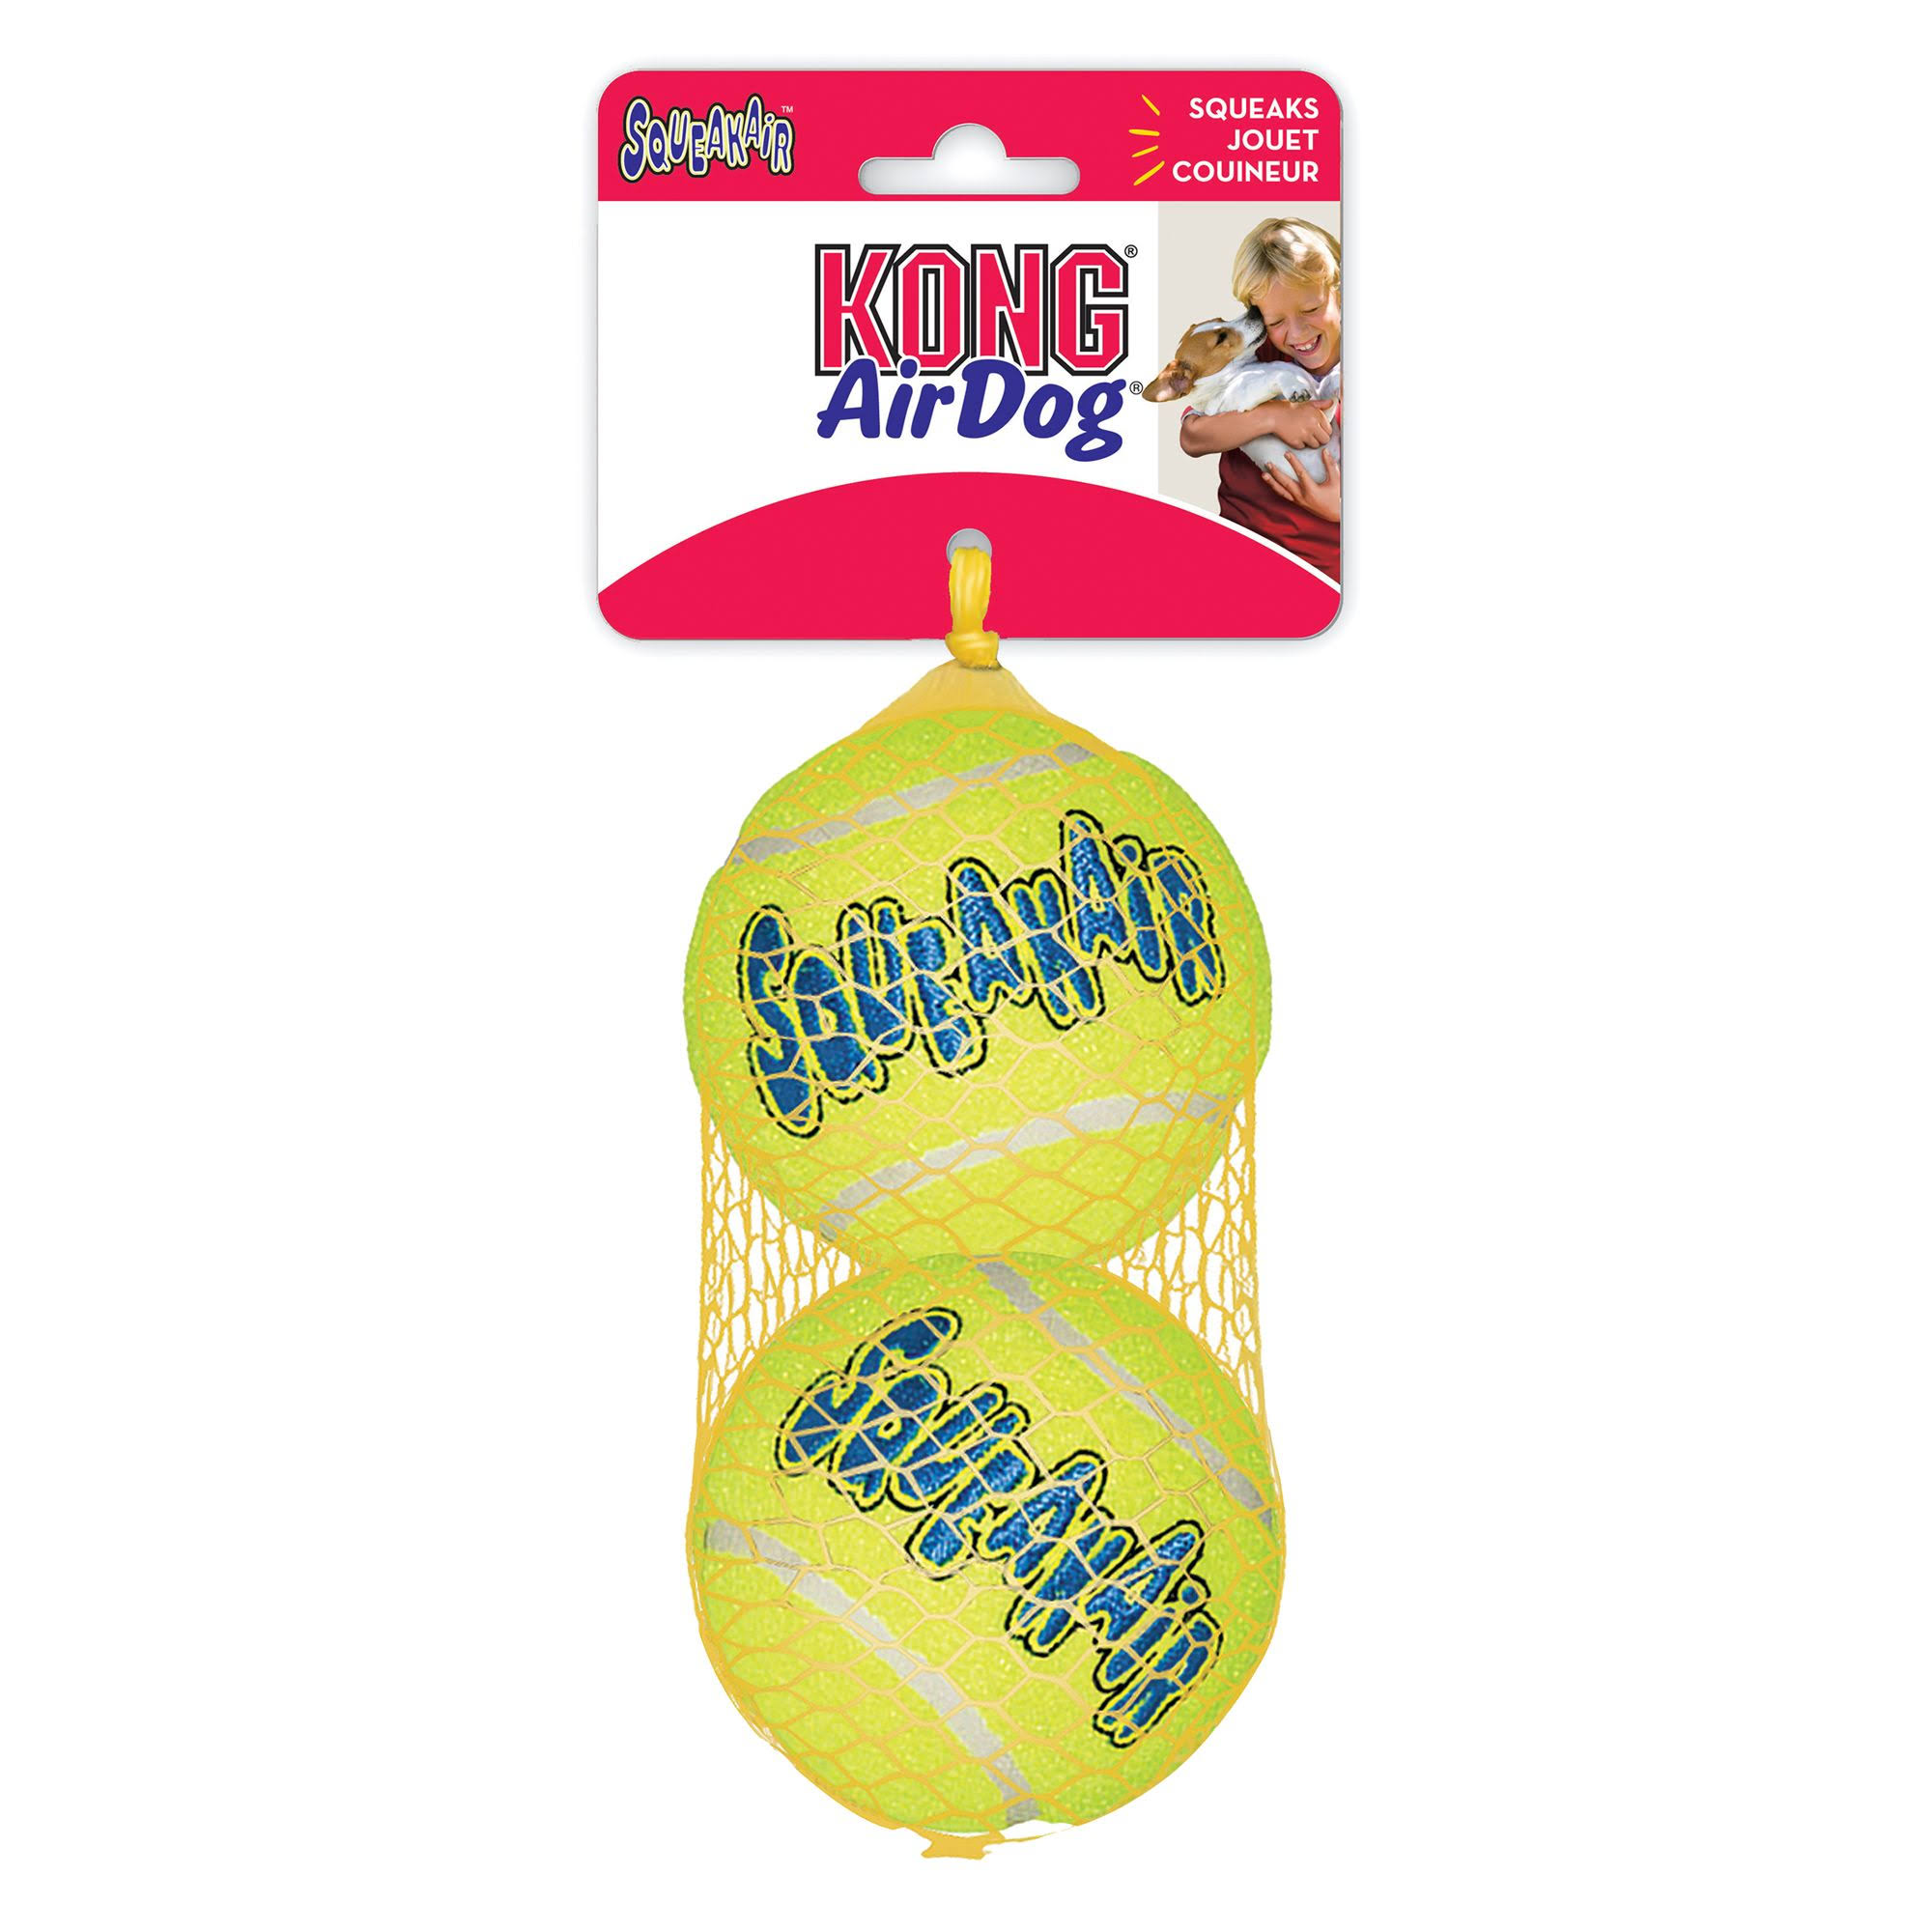 Kong Air Dog Squeaker Tennis Balls - x2